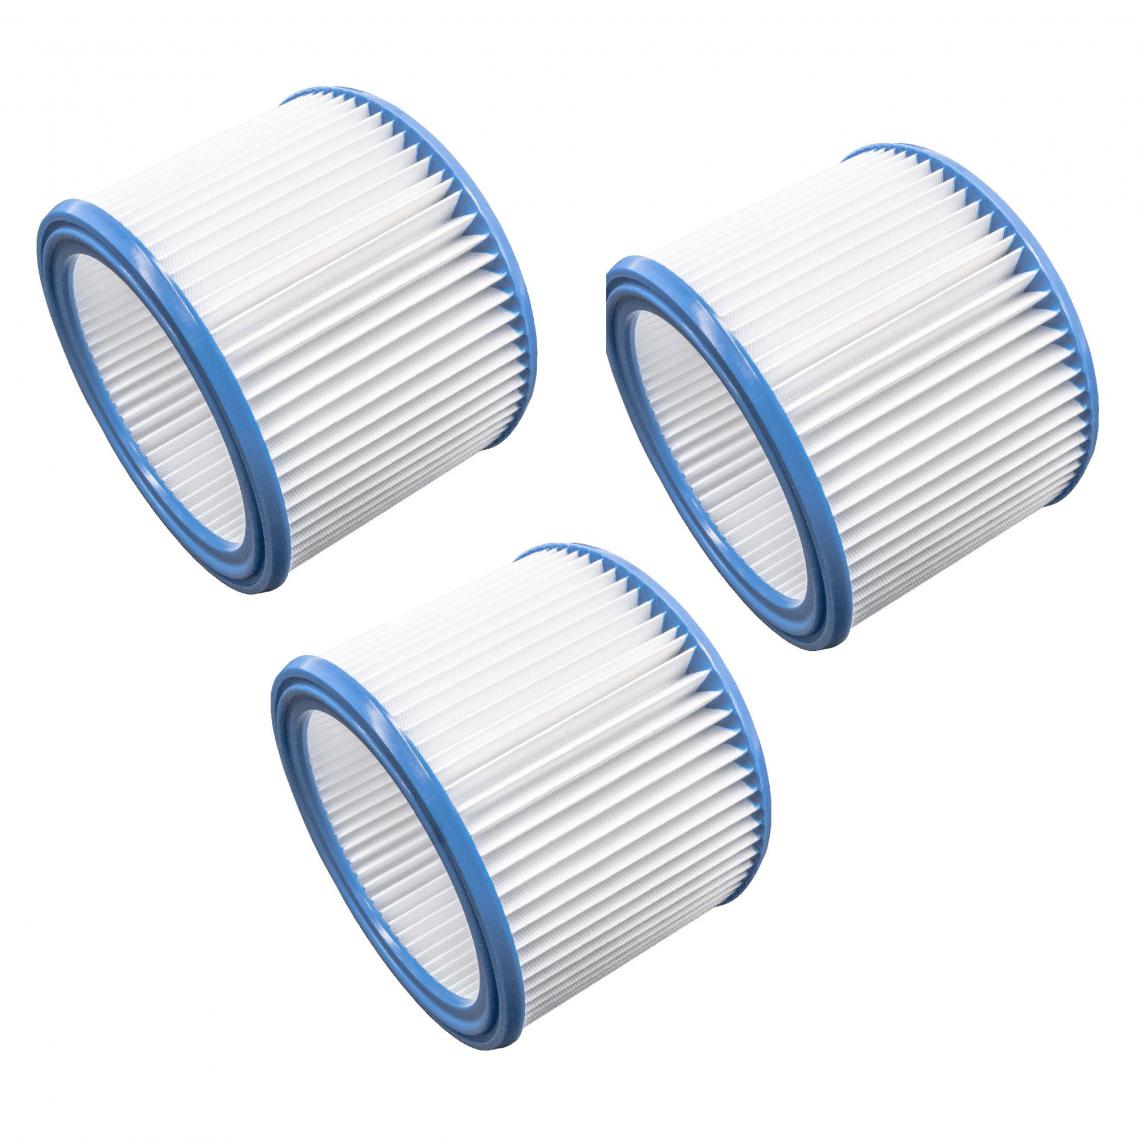 Vhbw - vhbw Set de filtres 3x Filtre plissé compatible avec Nilfisk Attix 40-21 PC Inox, 50-01 PC, 50-0H PC aspirateur à sec ou humide - Filtre à cartouche - Accessoire entretien des sols